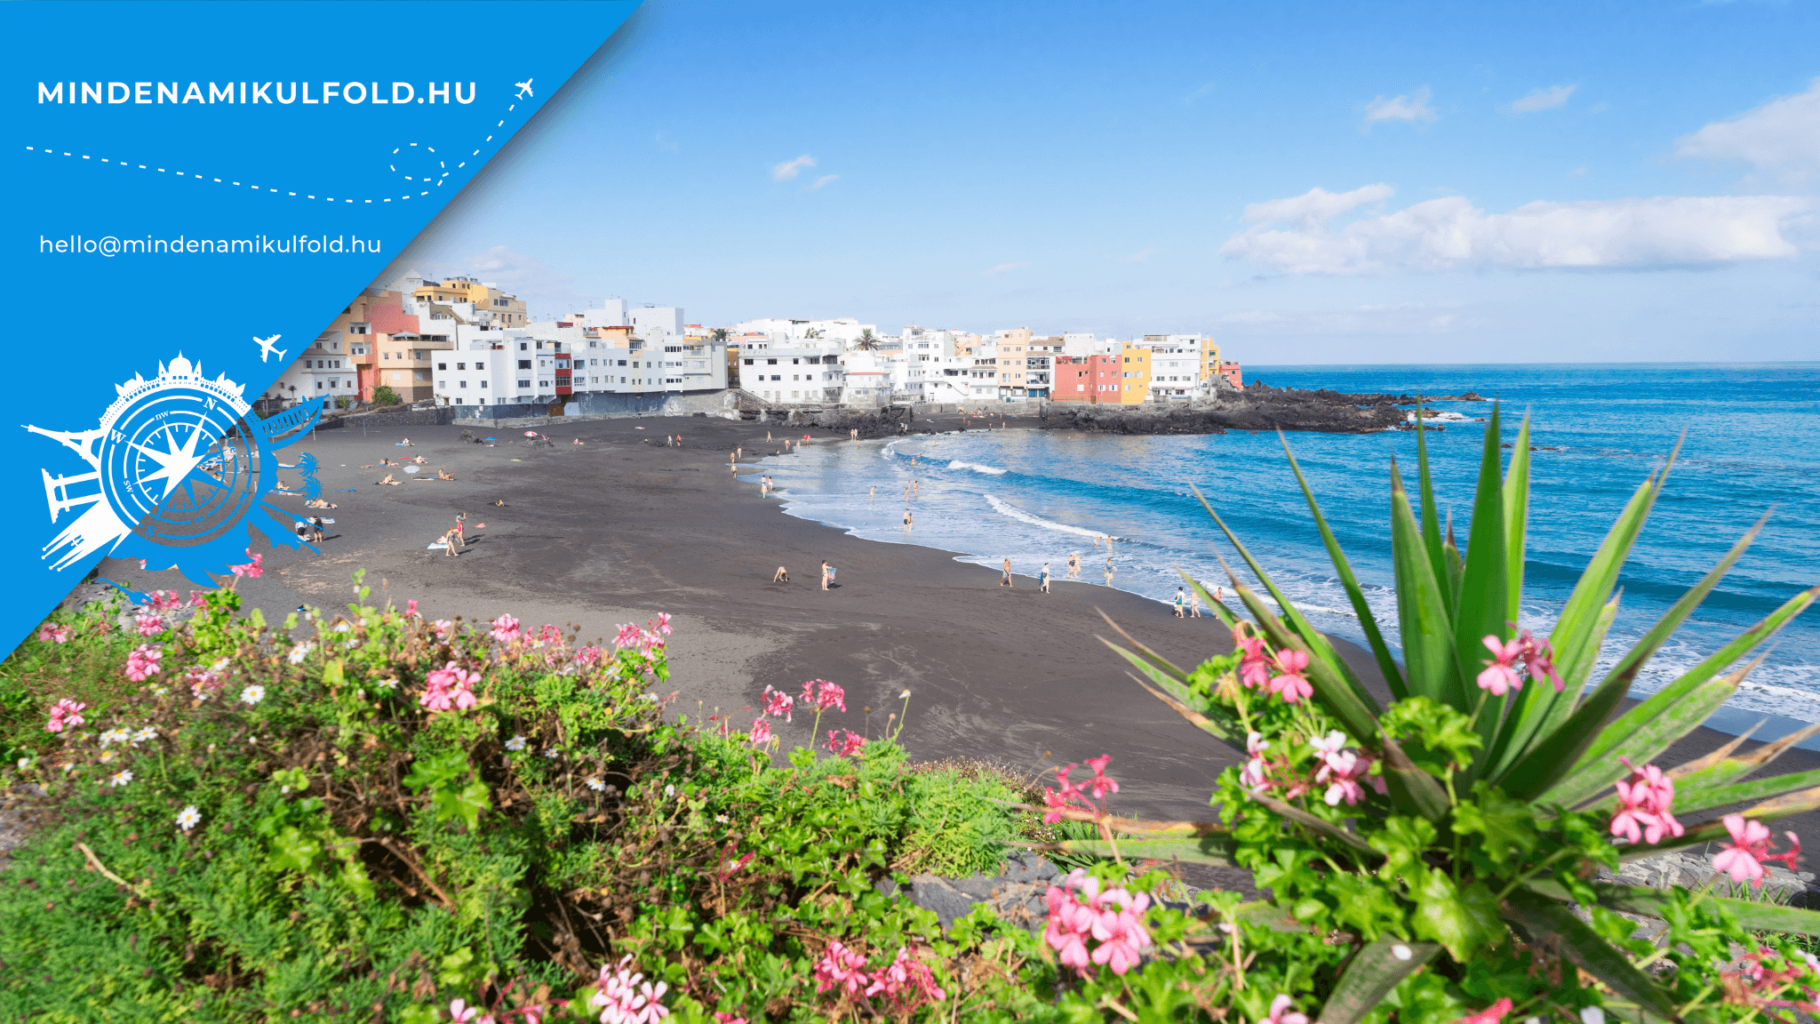 Velünk könnyű lesz megtalálnod a neked való strandot Tenerife szigetén, 8 hihetetlen playa, amit jó ha tudsz már utazás előtt!